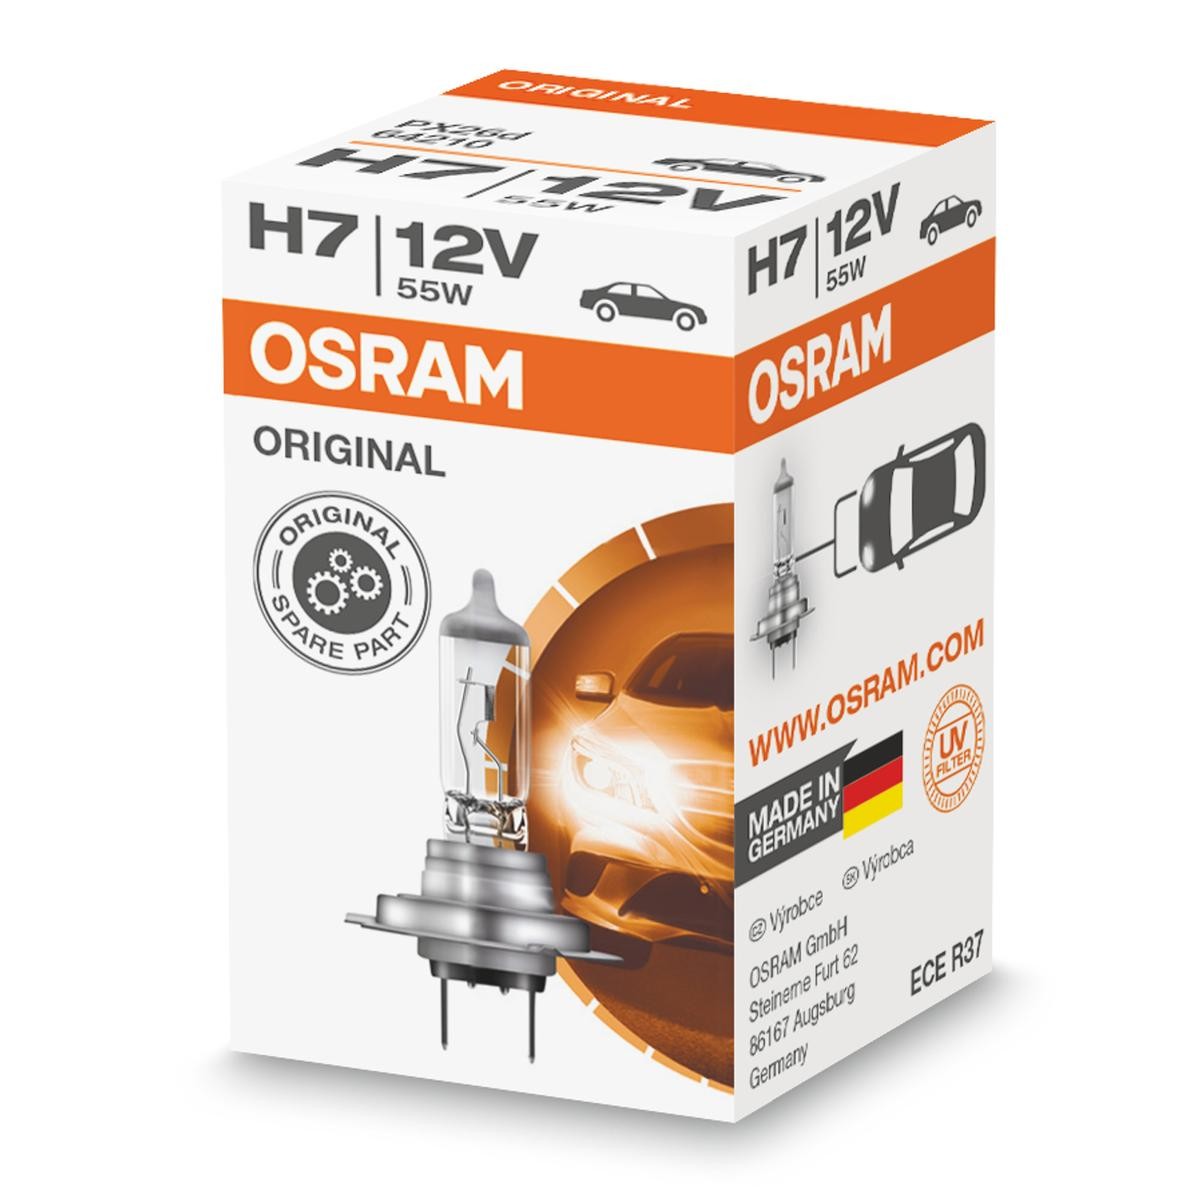 Porsche ricambi di qualità originale 
H7 OSRAM 64210L